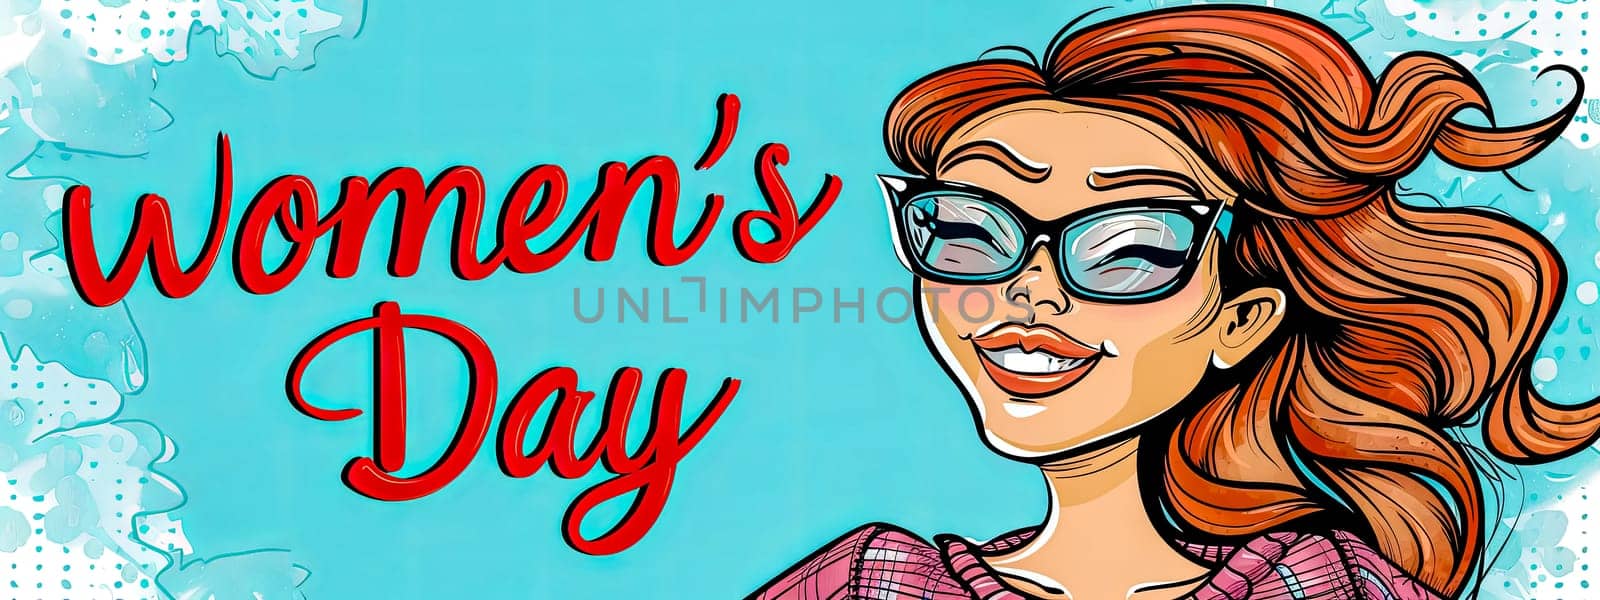 Women's day cartoon banner design by Edophoto